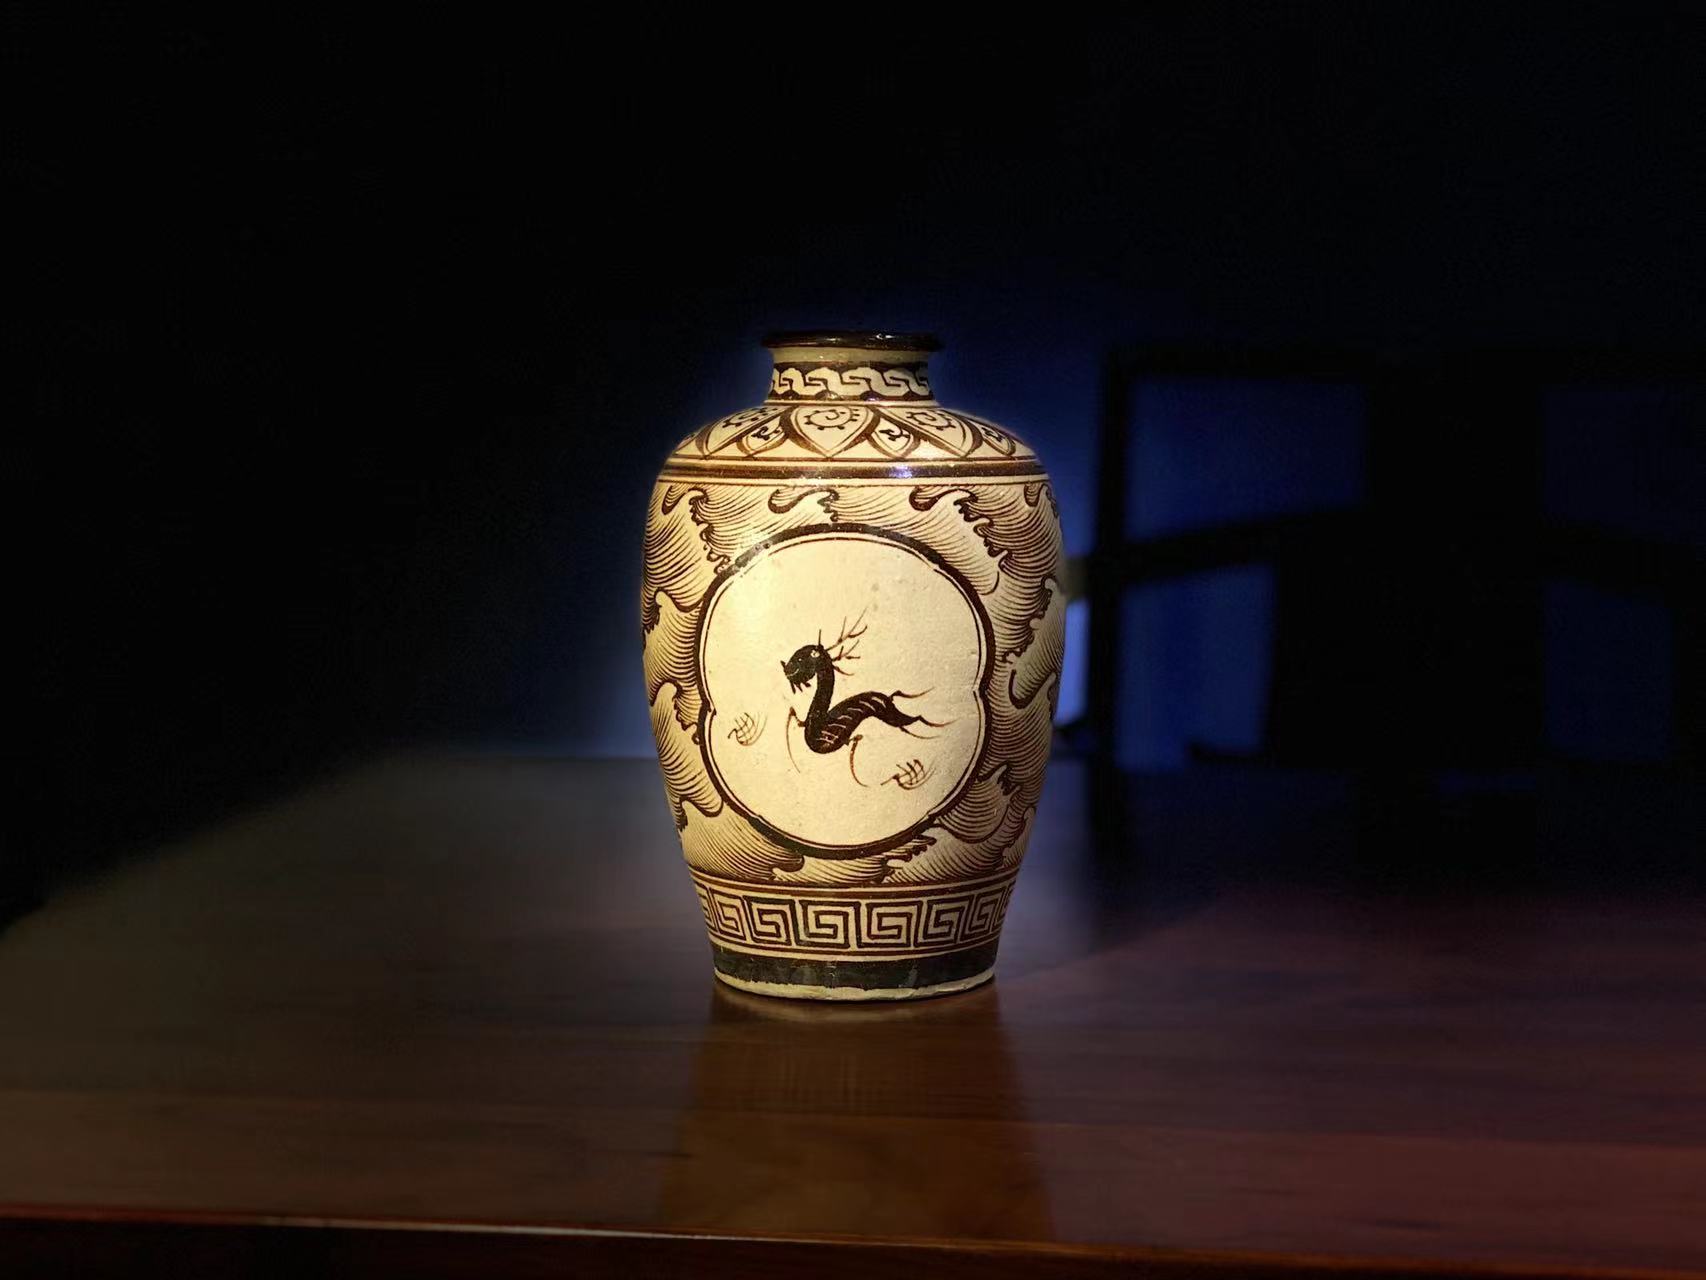 古器物宋代古瓷器江西吉州窑 黄釉酱彩手绘鹿人物图 梅瓶插花道罐